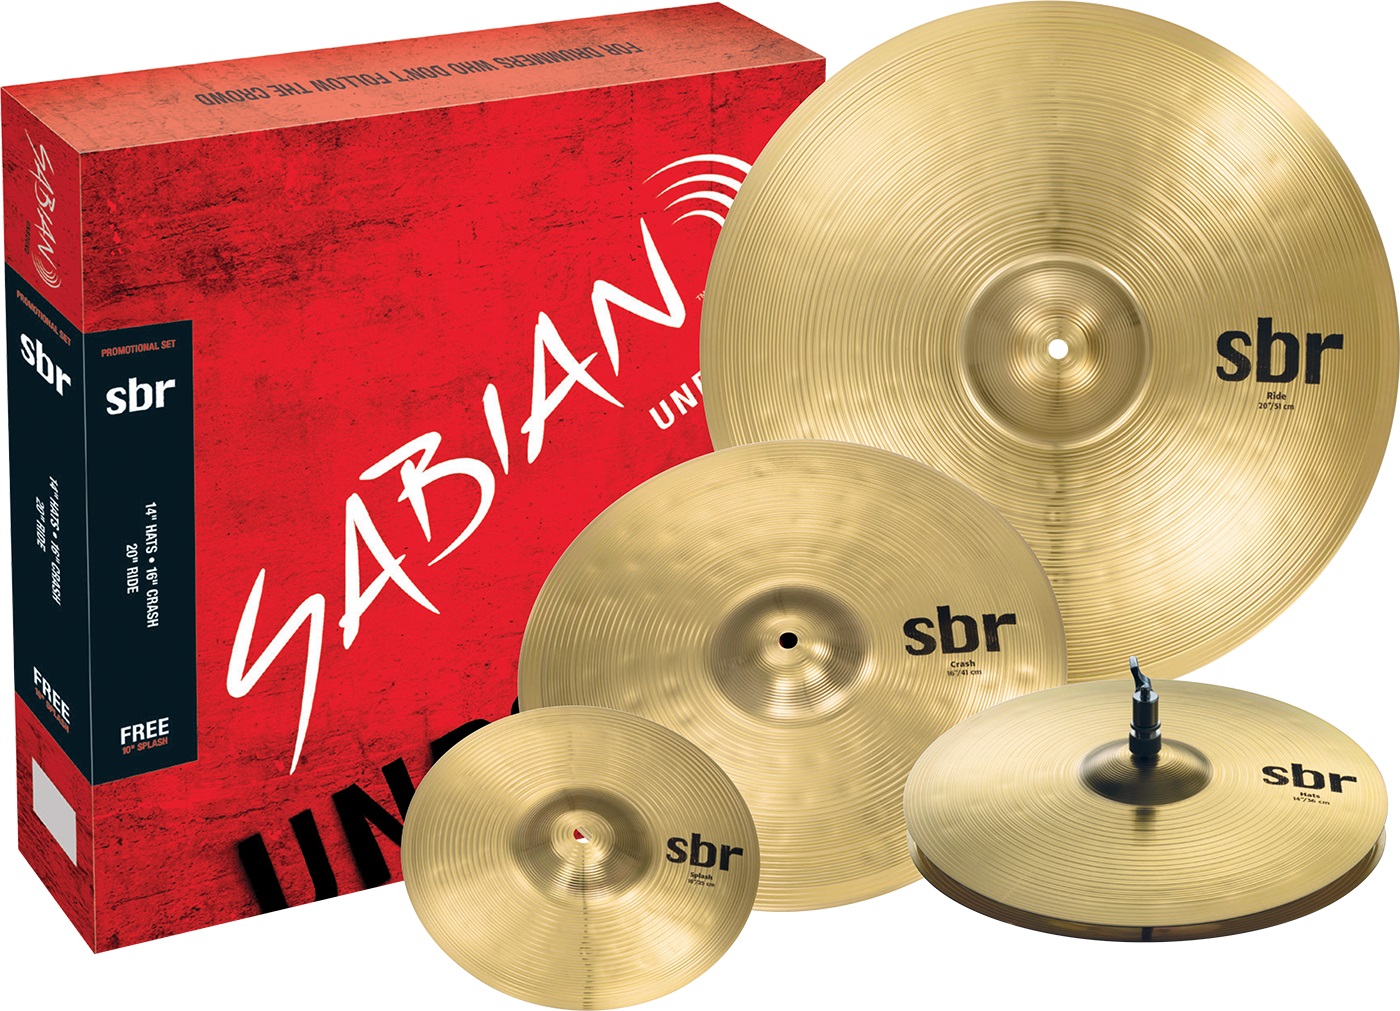 Тарелки, барабаны для ударных установок Sabian SBr Promotional Pack тарелки барабаны для ударных установок paiste 14 101 brass crash